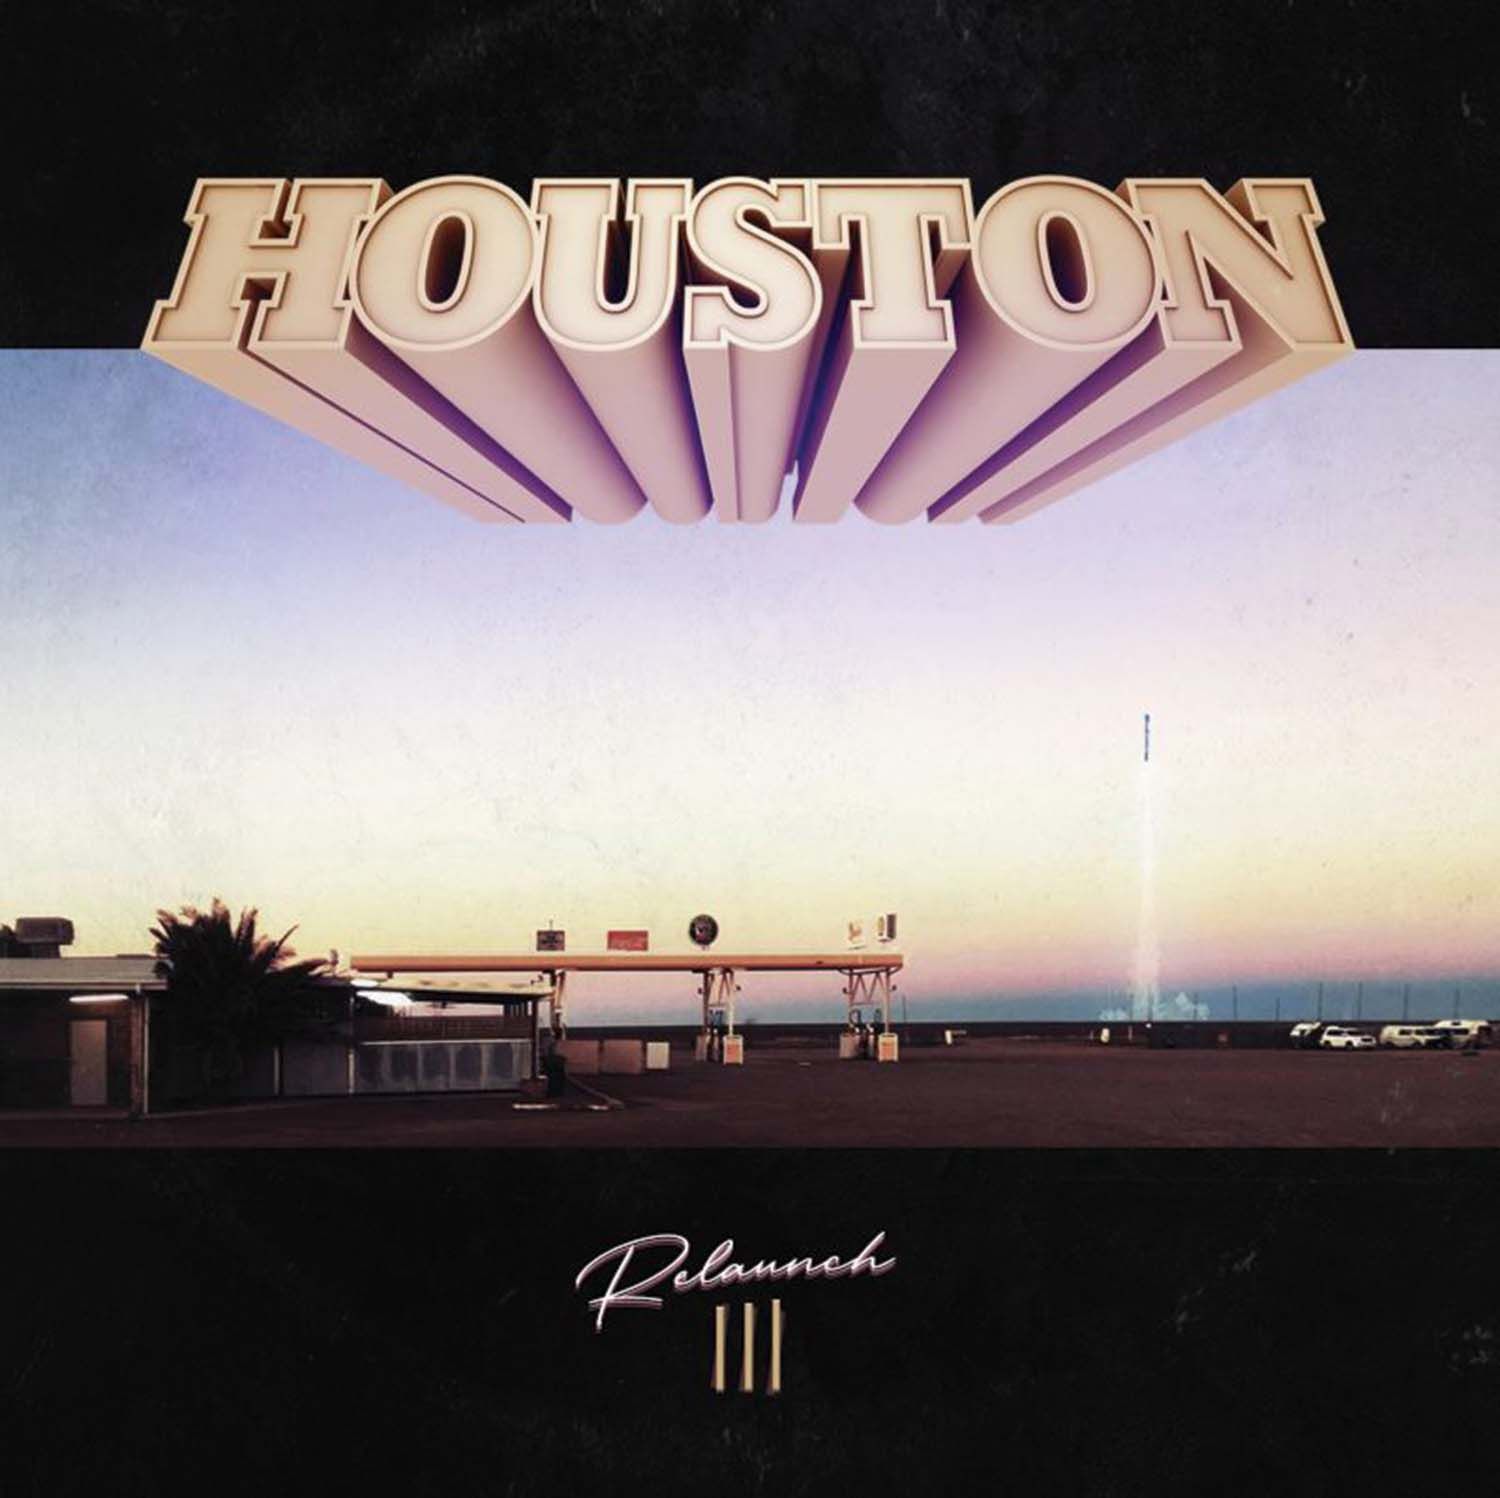 The Houston - Relaunch III